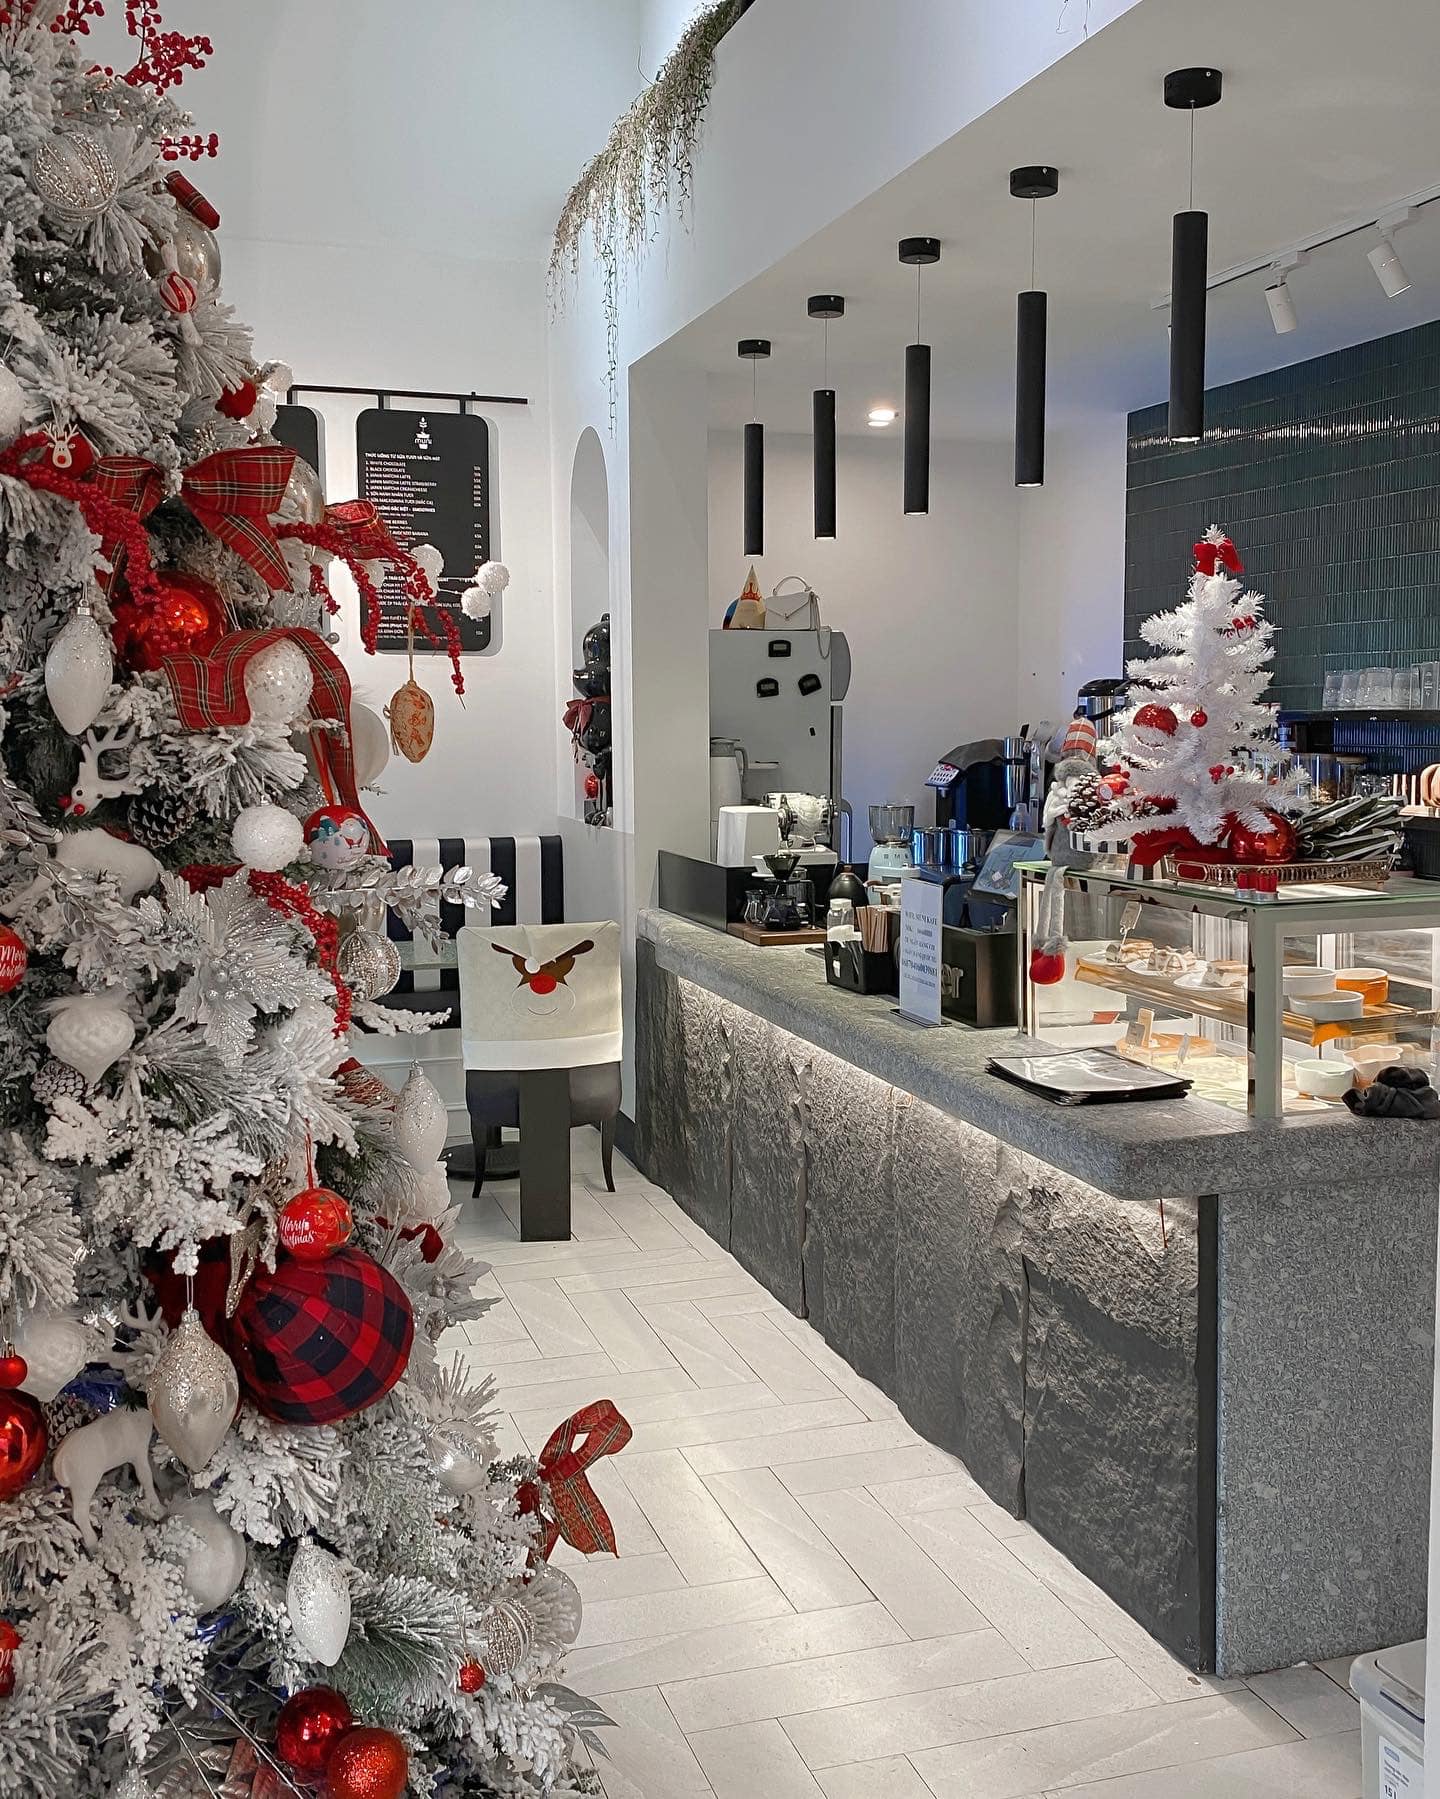 Quán cafe này được trang trí Noel đẹp mê hồn, với những chi tiết trang trí độc đáo và ấn tượng. Bạn sẽ được thưởng thức những tách cà phê ngon miệng trong không gian ấm áp và lung linh, làm cho mùa lễ hội của bạn trở nên đặc biệt hơn bao giờ hết.